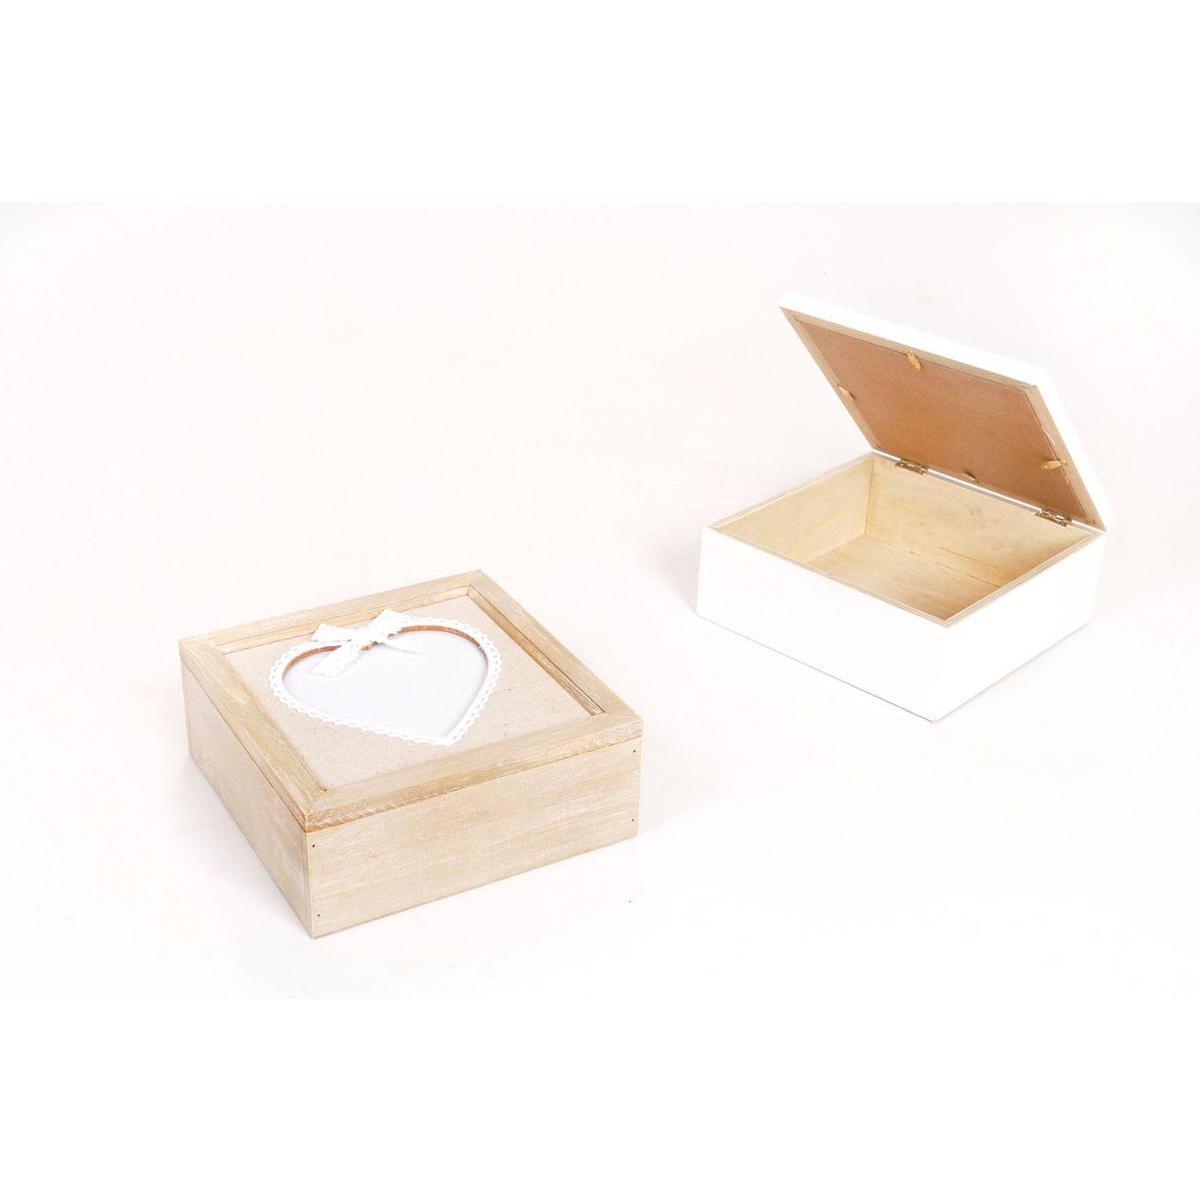 Boîte à petites choses en bois - 20 x 20 x 8 cm - Blanc, Beige